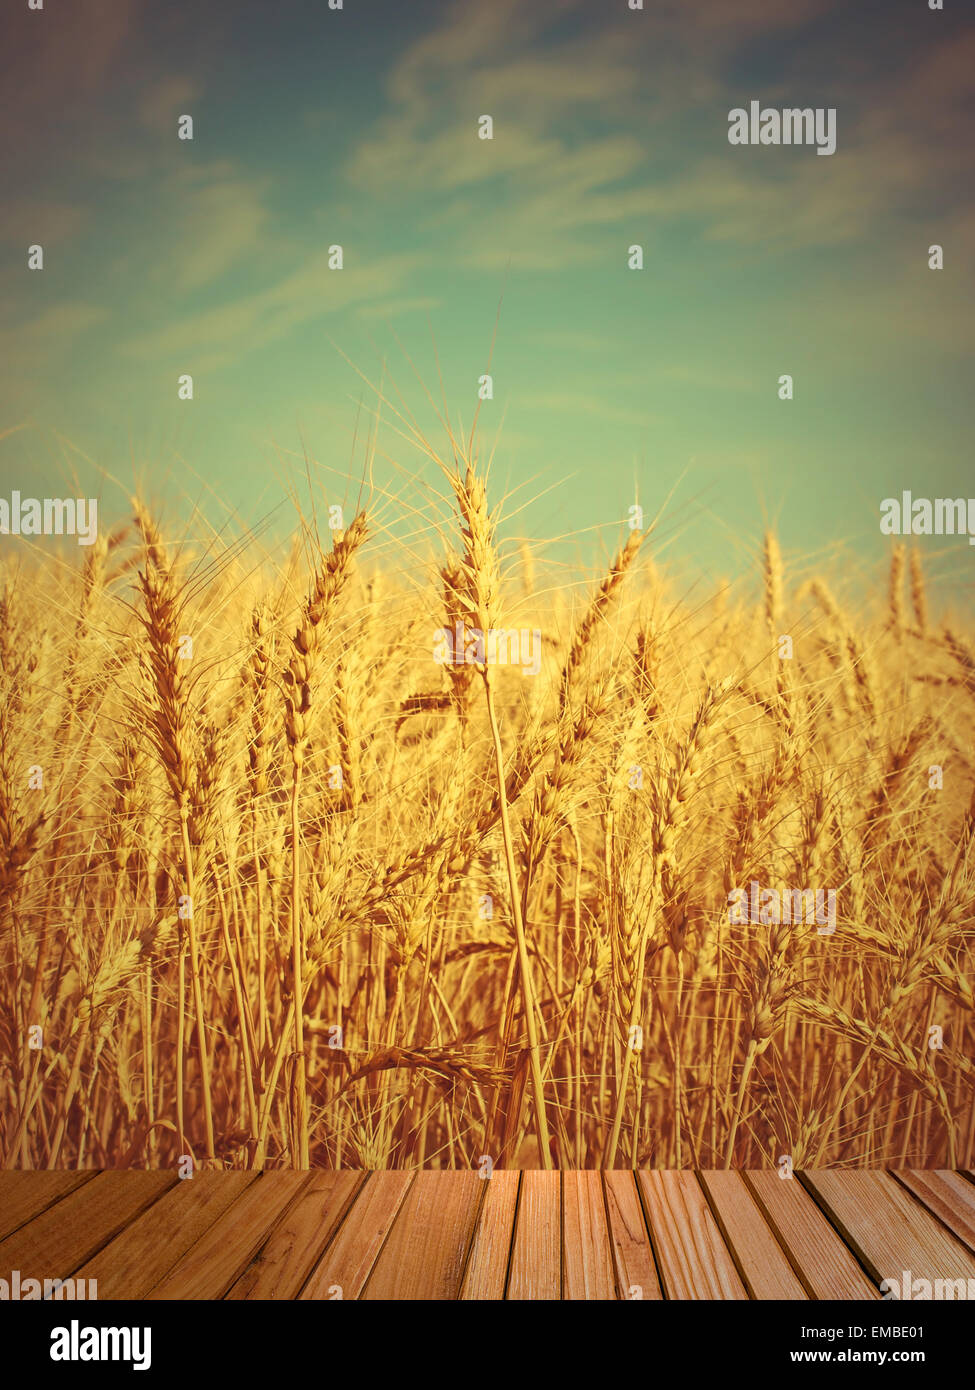 Les épis de blé sur le terrain et le bois en bois sur l'avant-plan.tonique de l'image. Banque D'Images